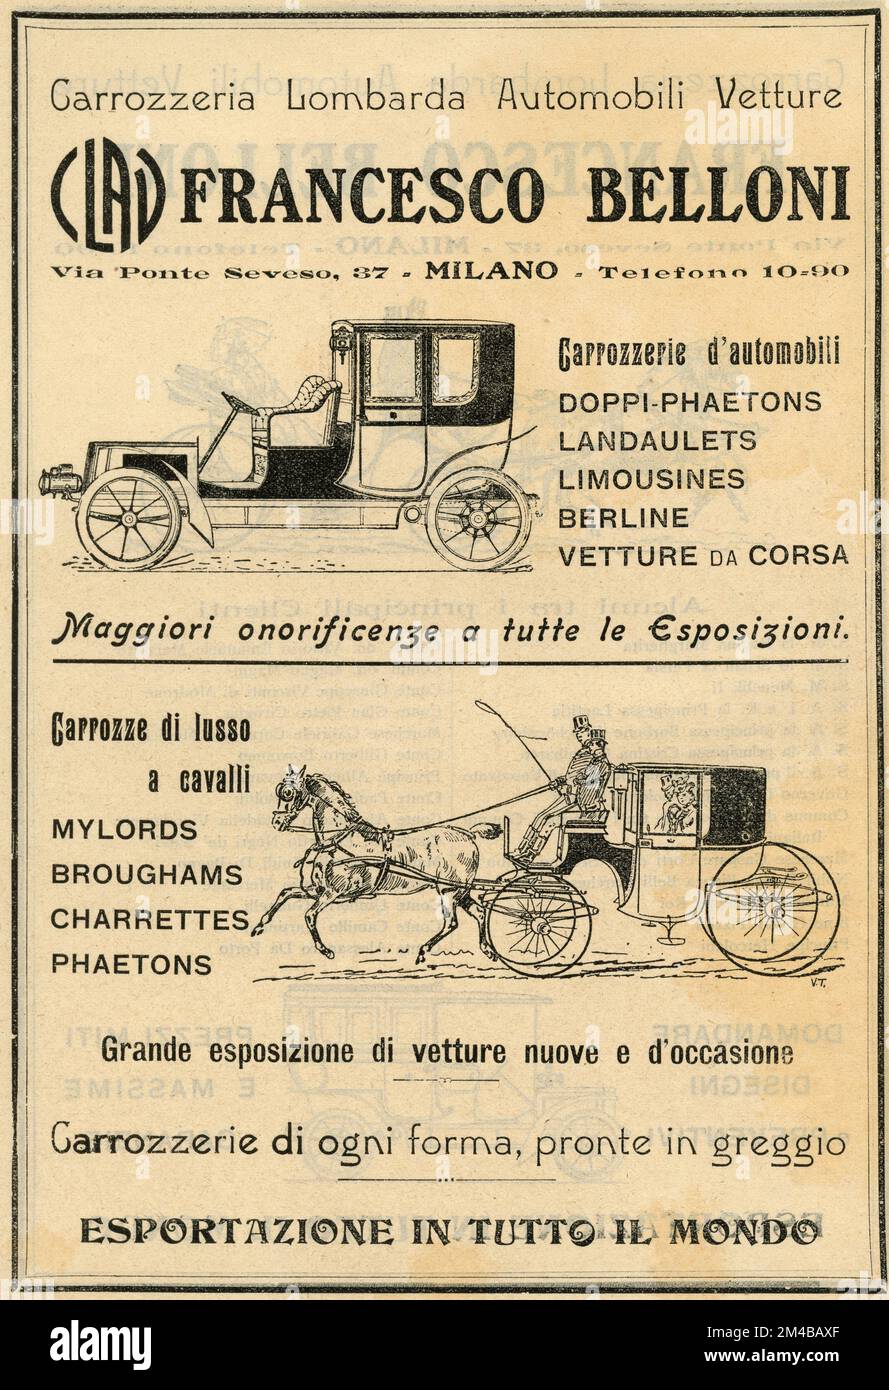 Publicité de journal vintage de Carrozzeria Lombarda Automobili Vetture Francesco Belloni, Italie 1910s Banque D'Images